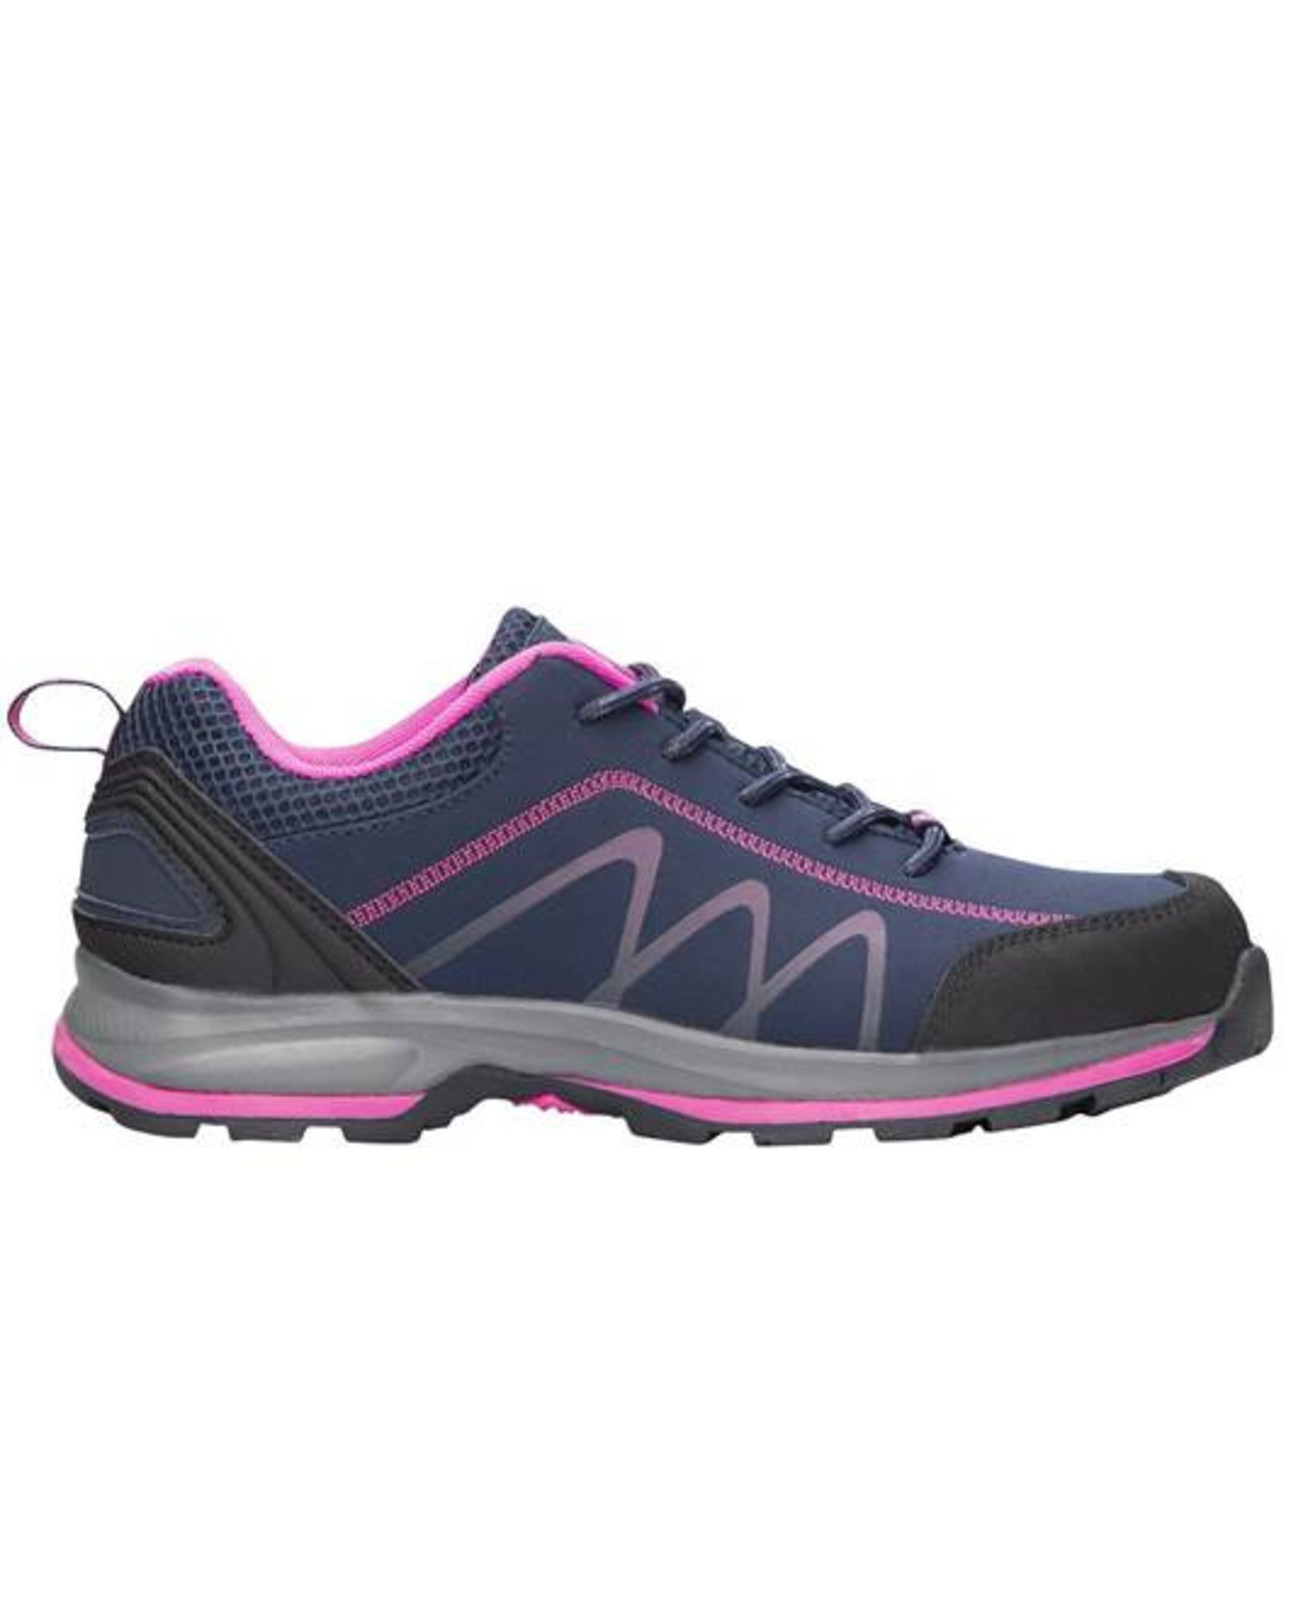 Dámska outdoor softshellová obuv Ardon Bloom - veľkosť: 38, farba: navy lila